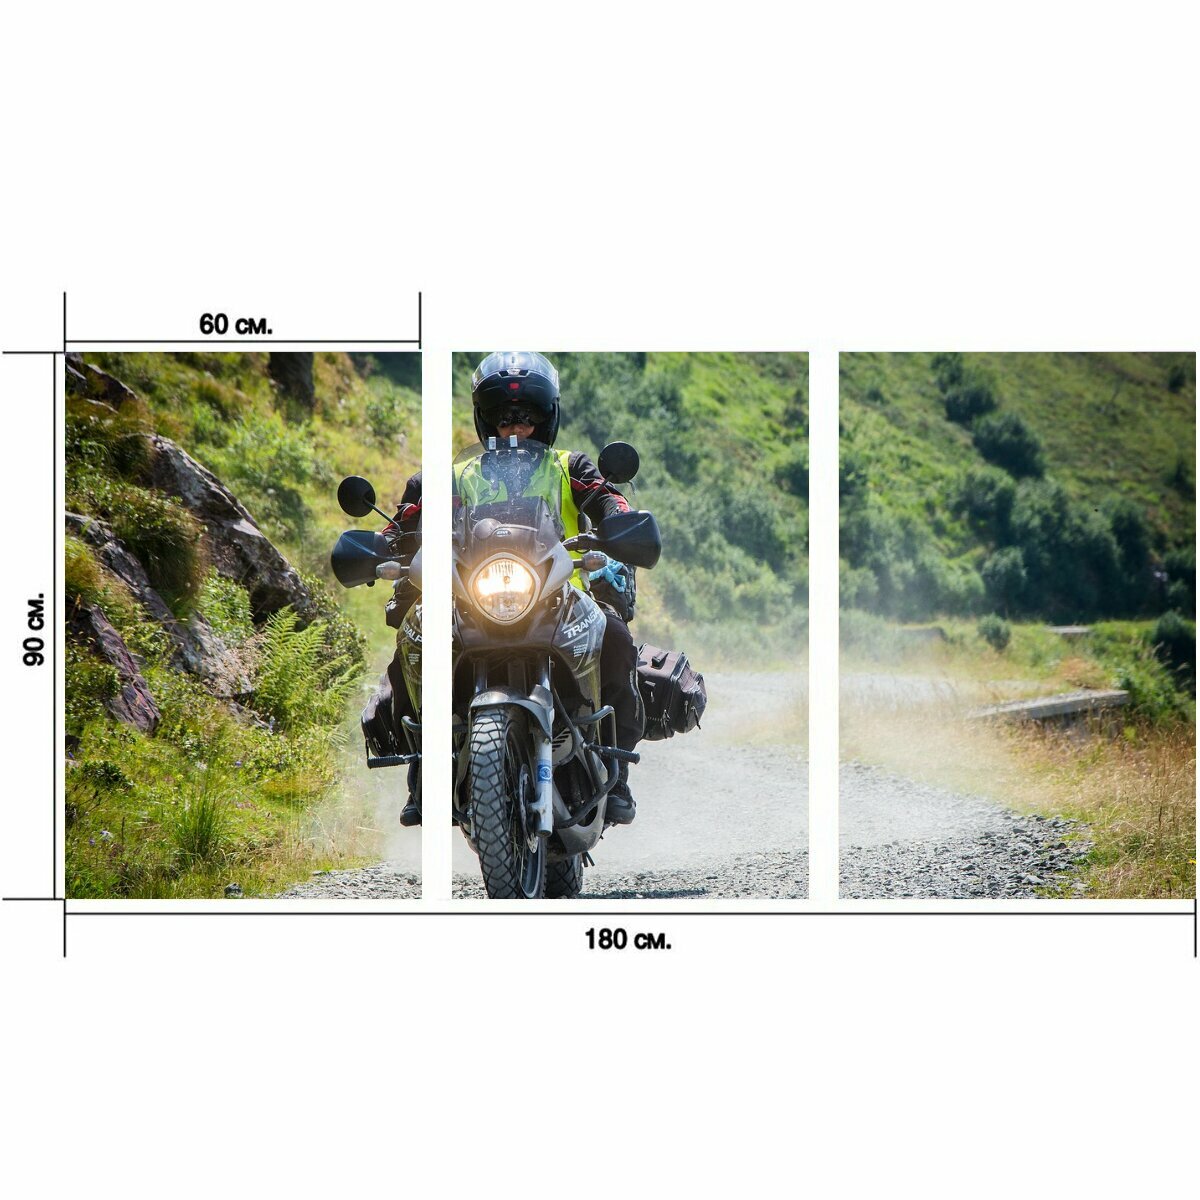 Модульный постер "Мотоцикл, велосипед, байкер" 180 x 90 см. для интерьера